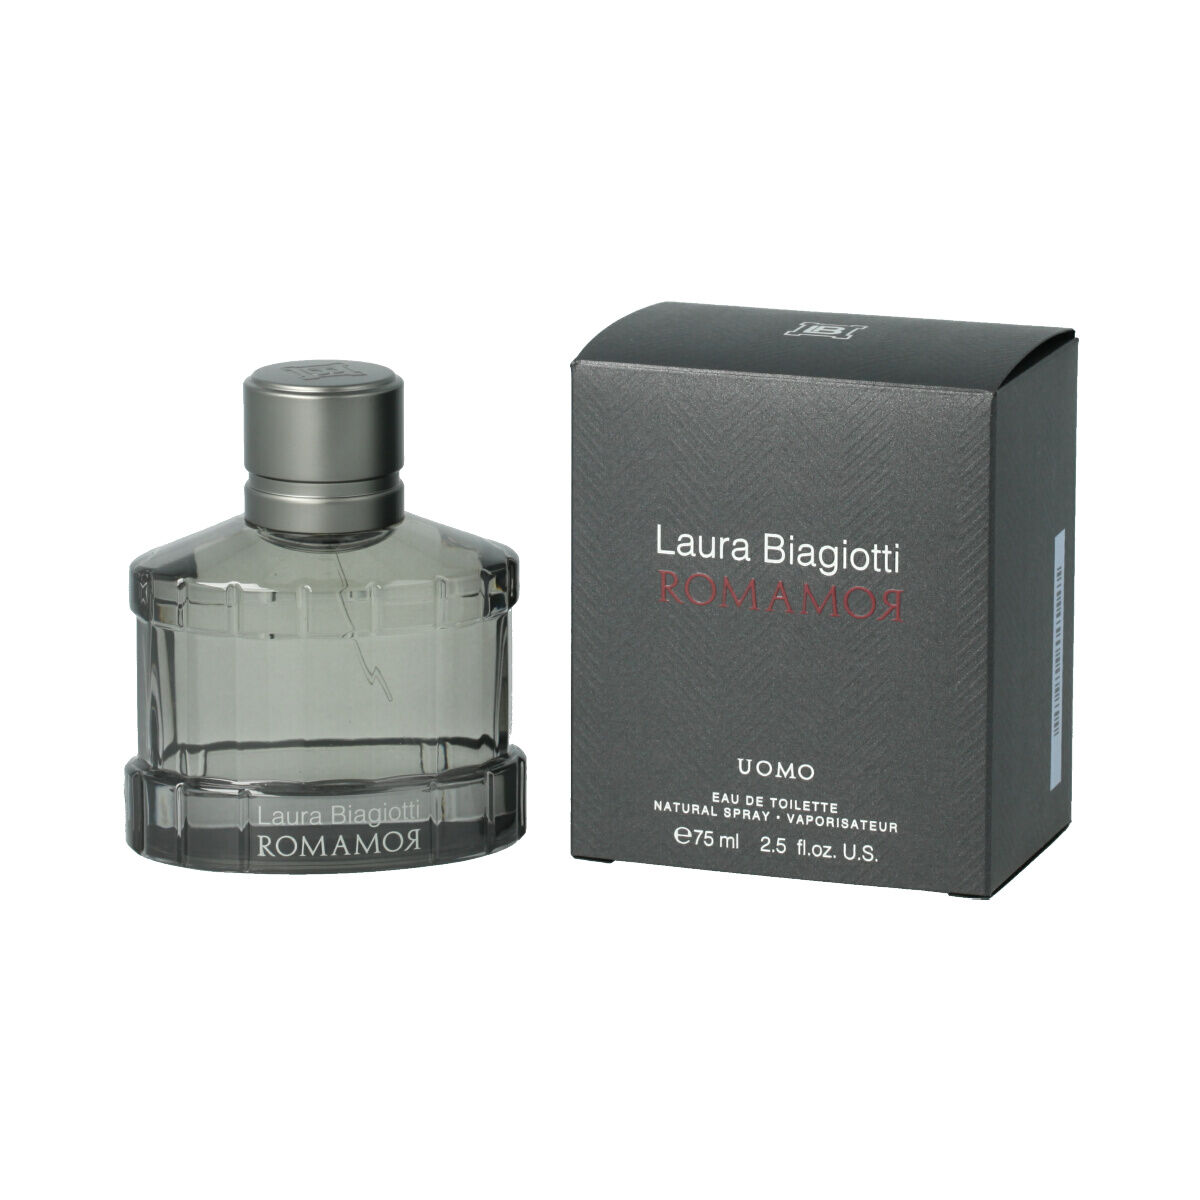 Parfum Homme Laura Biagiotti EDT Romamor Uomo (75 ml)